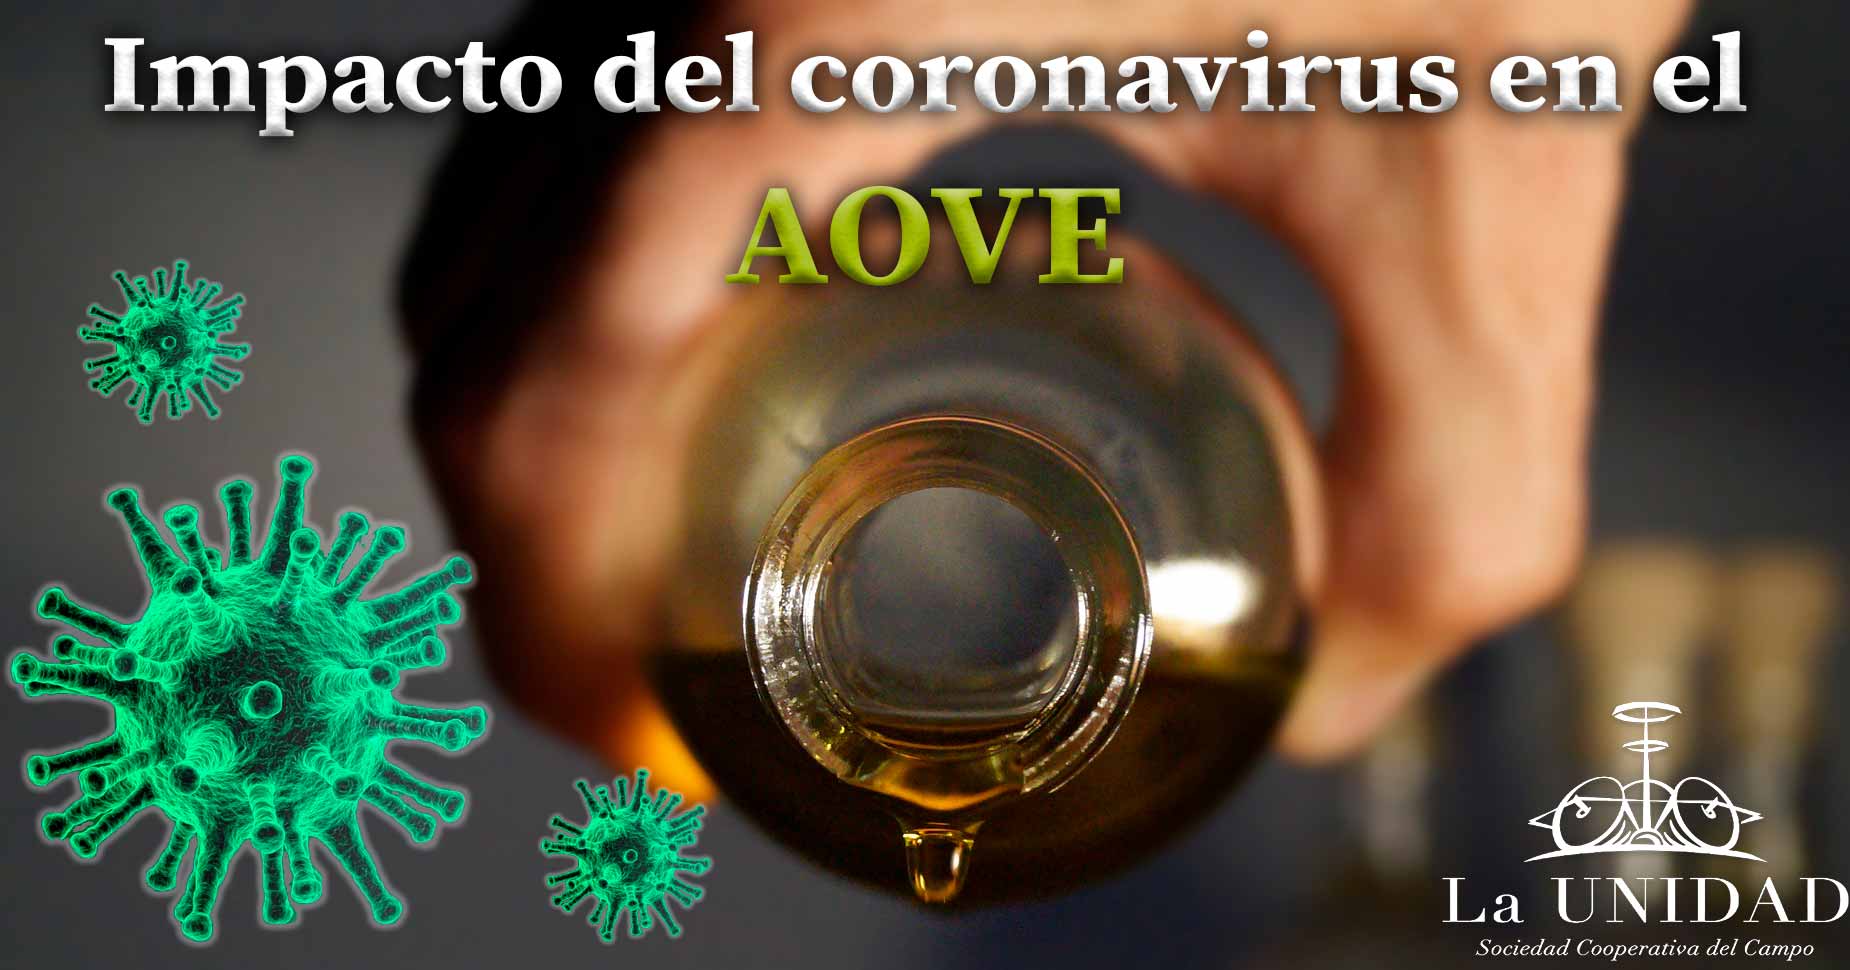 Impacto del coronavirus en aceite de oliva